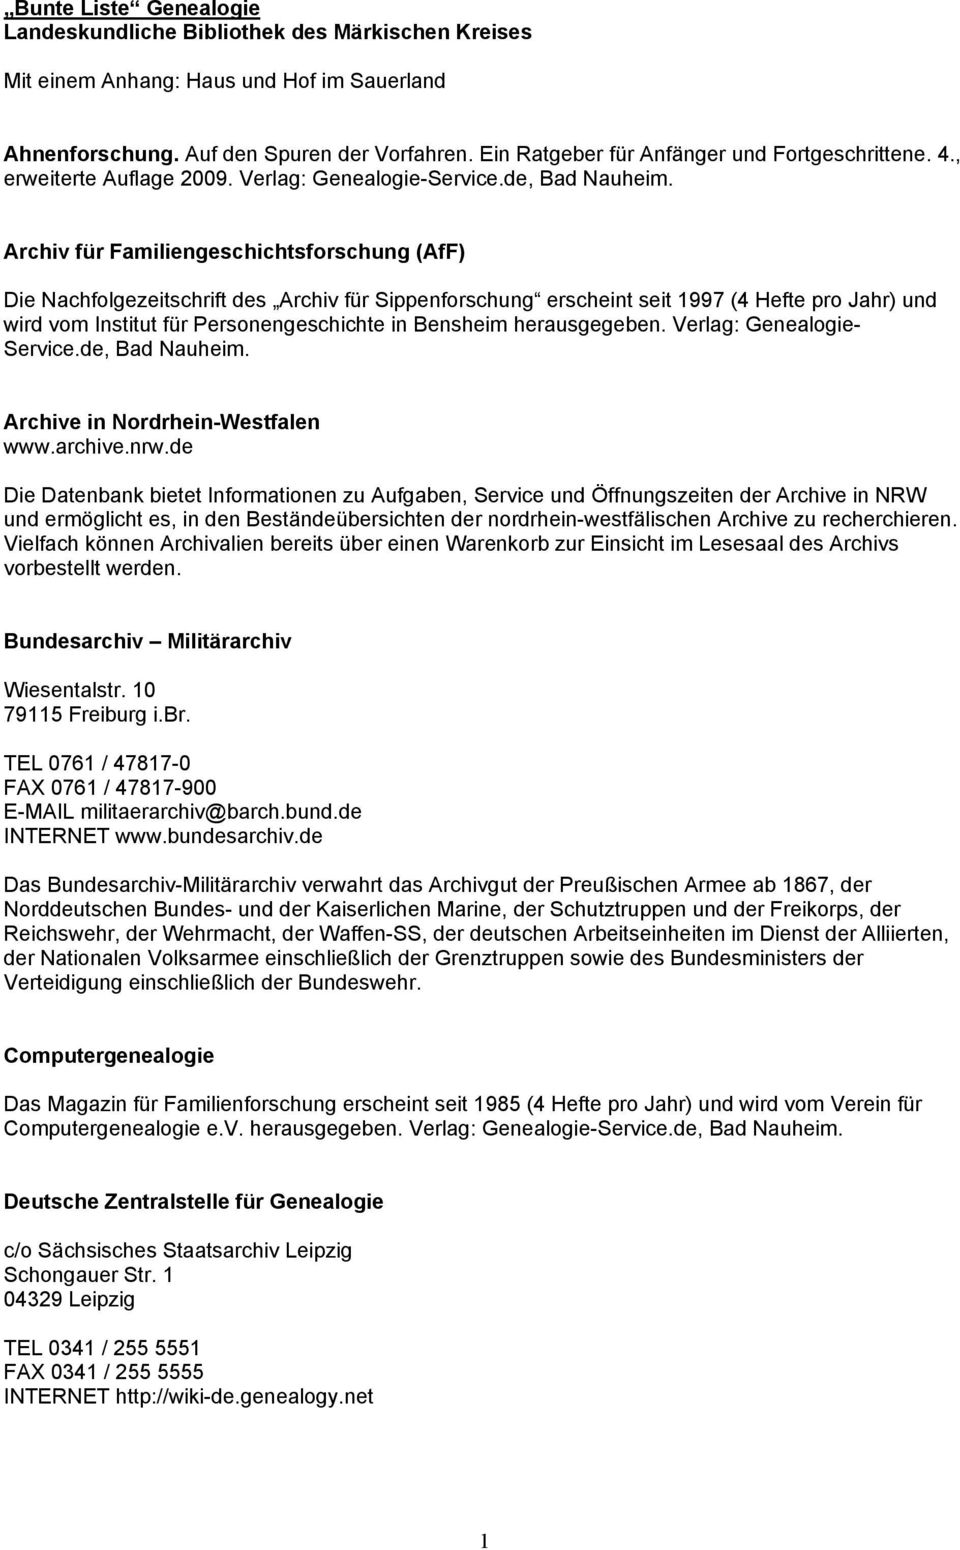 Archiv für Familiengeschichtsforschung (AfF) Die Nachfolgezeitschrift des Archiv für Sippenforschung erscheint seit 1997 (4 Hefte pro Jahr) und wird vom Institut für Personengeschichte in Bensheim